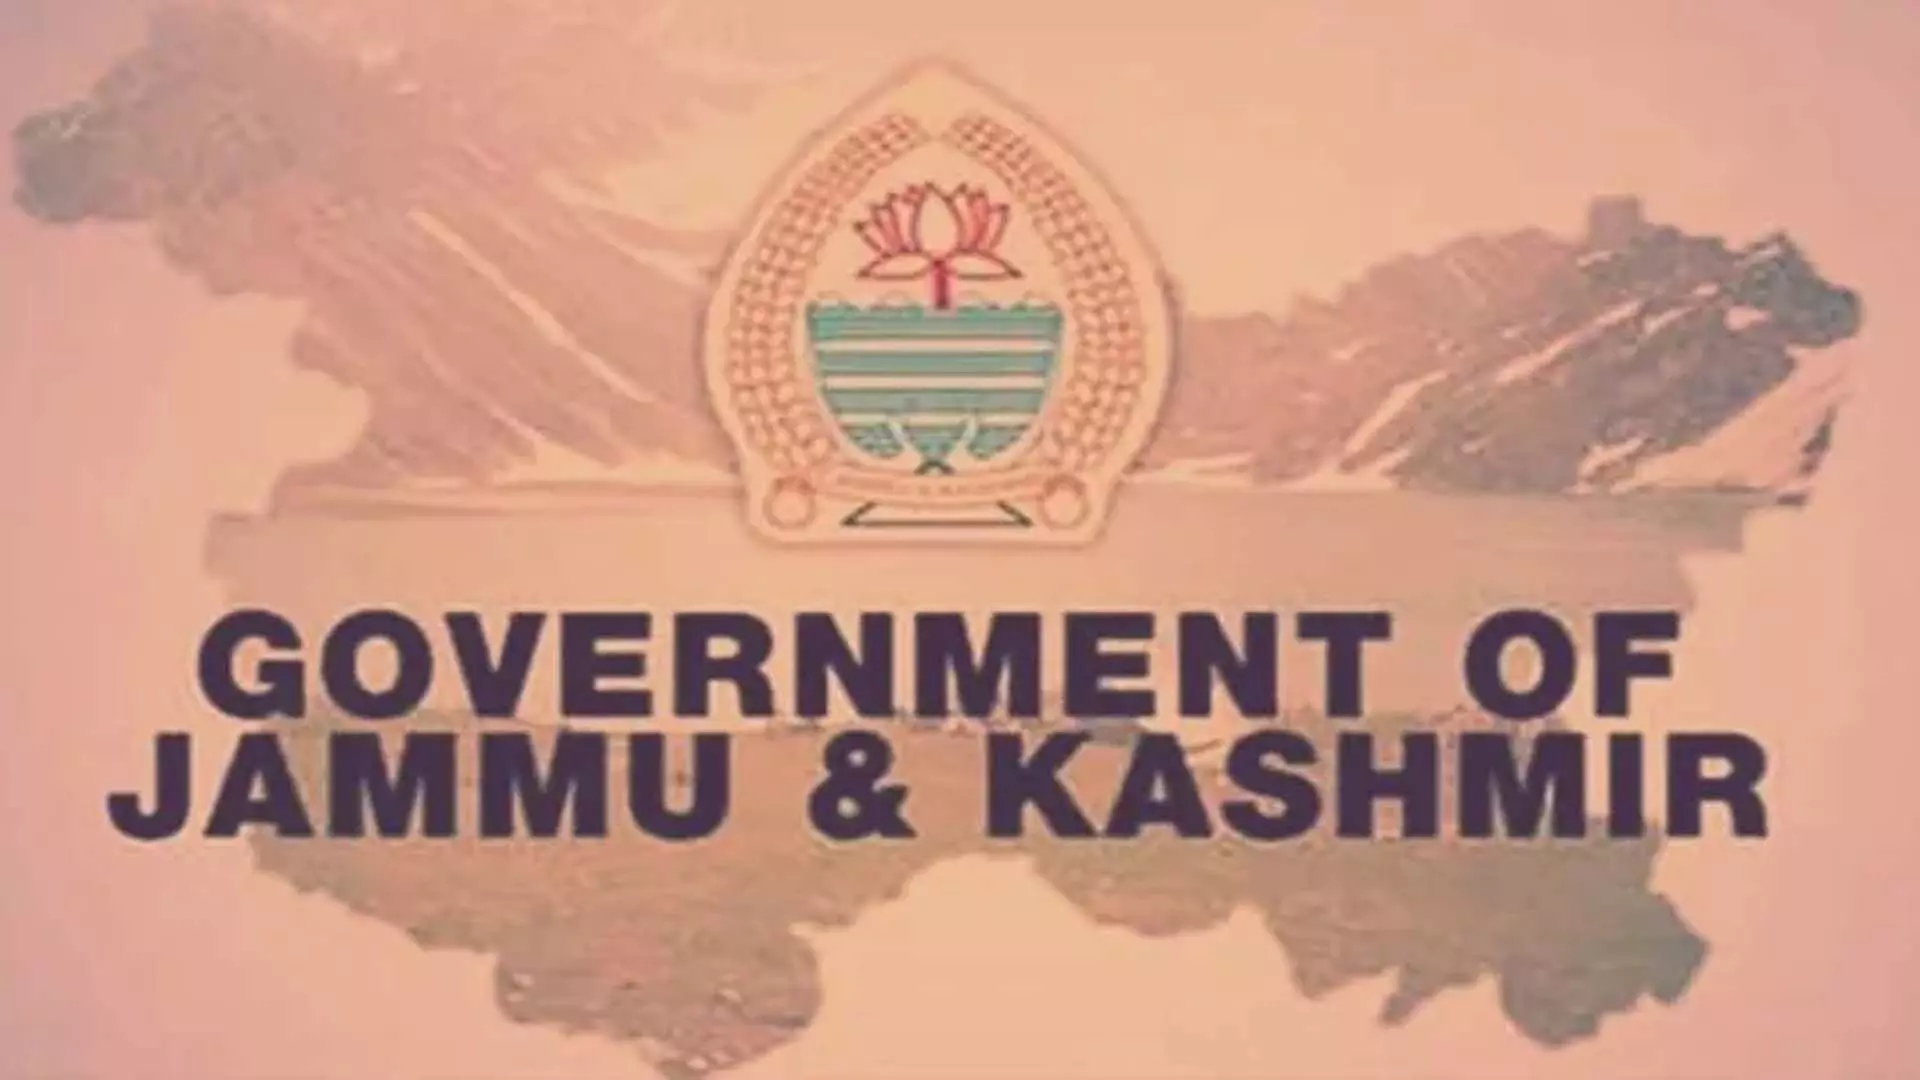 Jammu:  विभागों को न्यायालय के समक्ष समेकित जवाब दाखिल करने को कहा गया